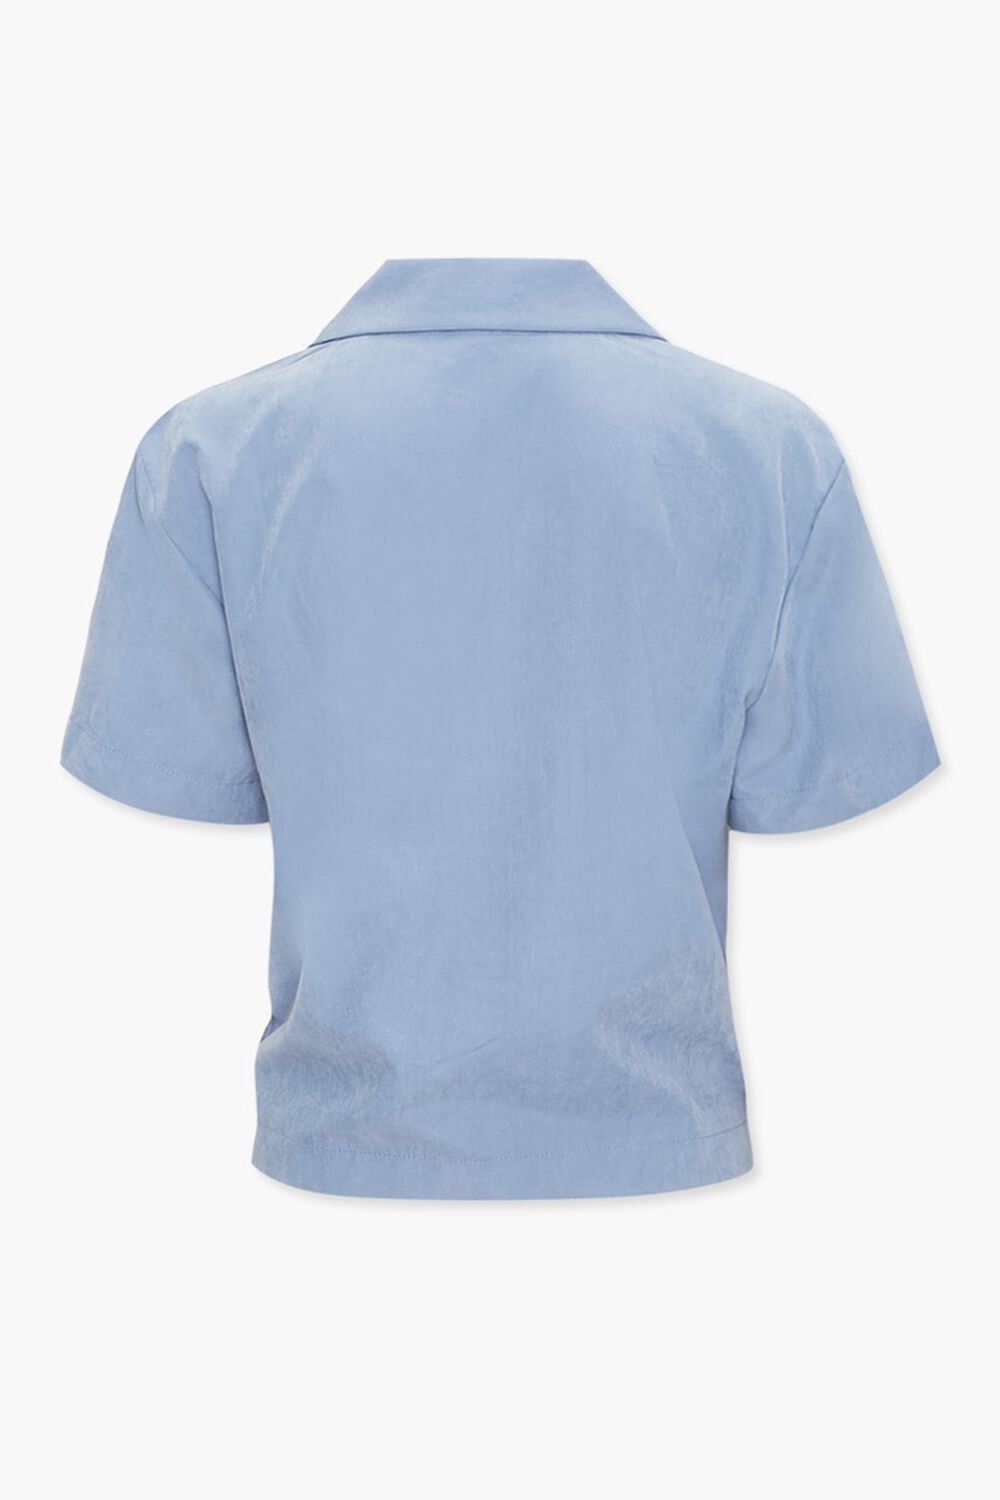 SKY BLUE Tie-Front Cuban Collar Shirt, image 2